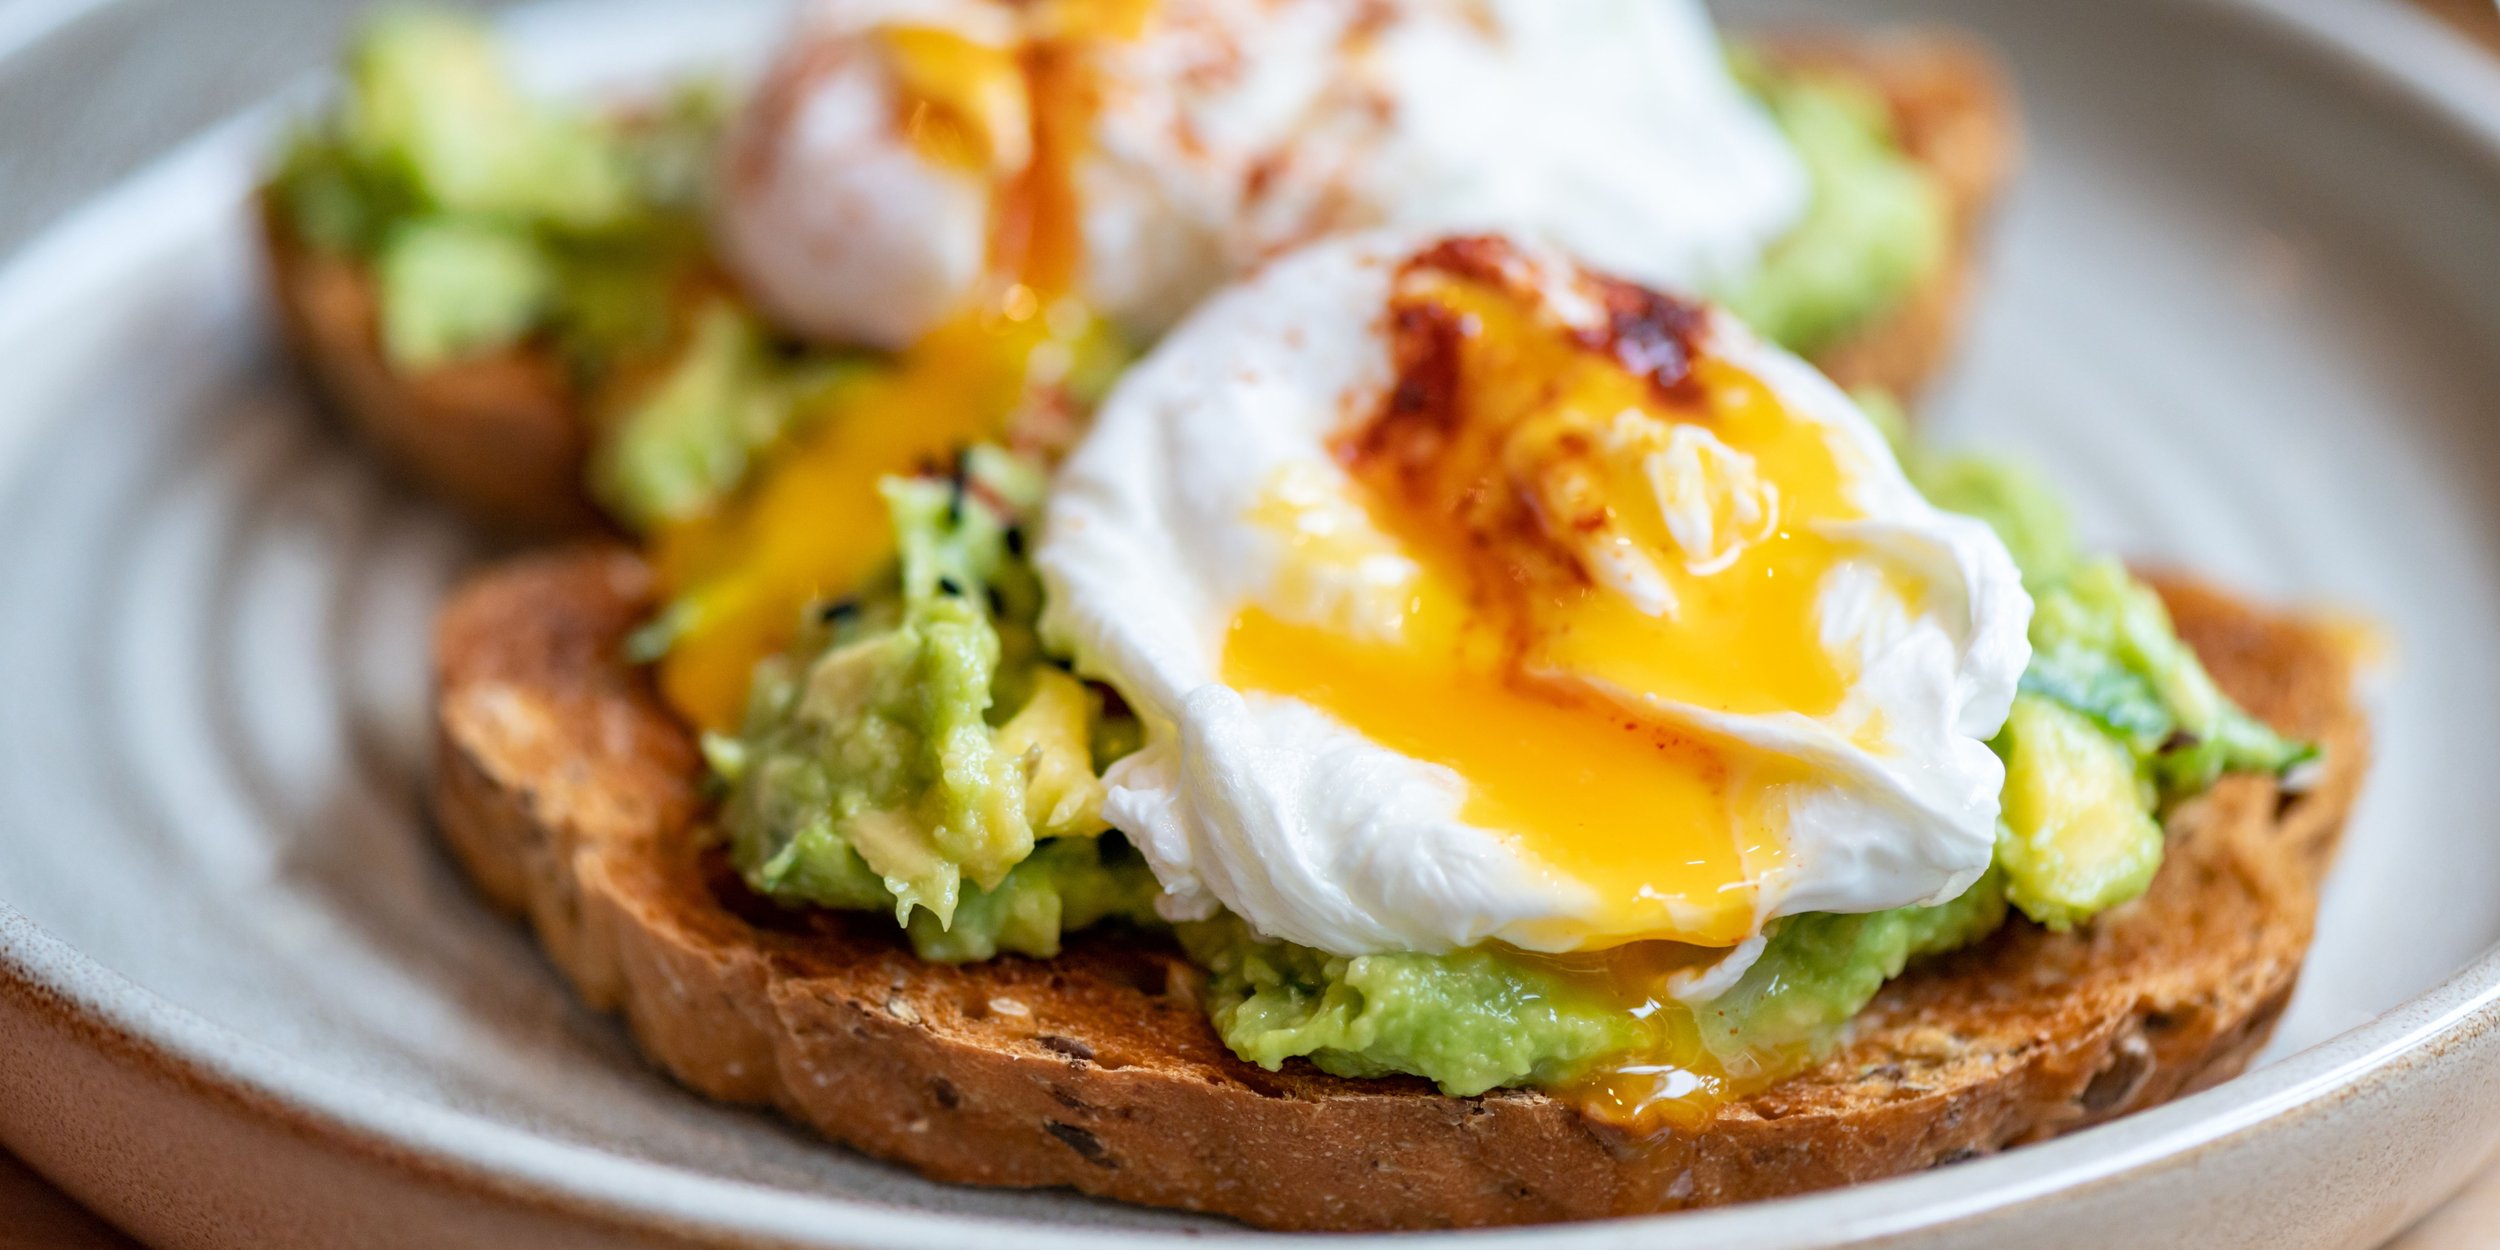 smashed avocado with egg toast.jpg